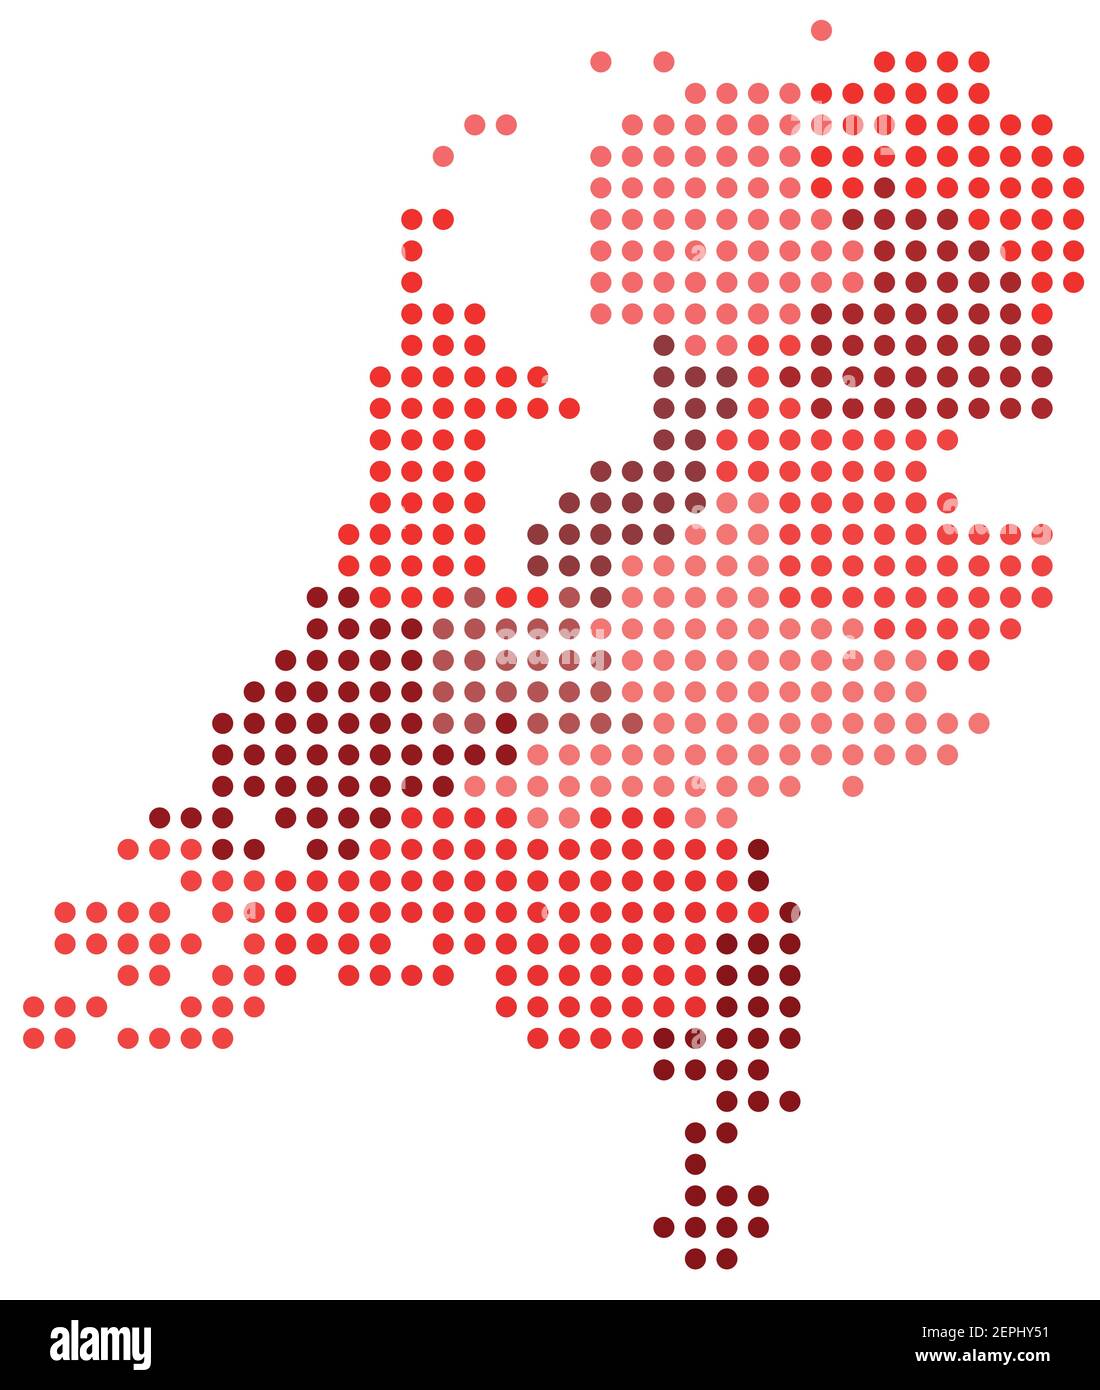 Carte des pixels des cercles vectoriels des régions et zones administratives des pays-Bas en rouge Illustration de Vecteur